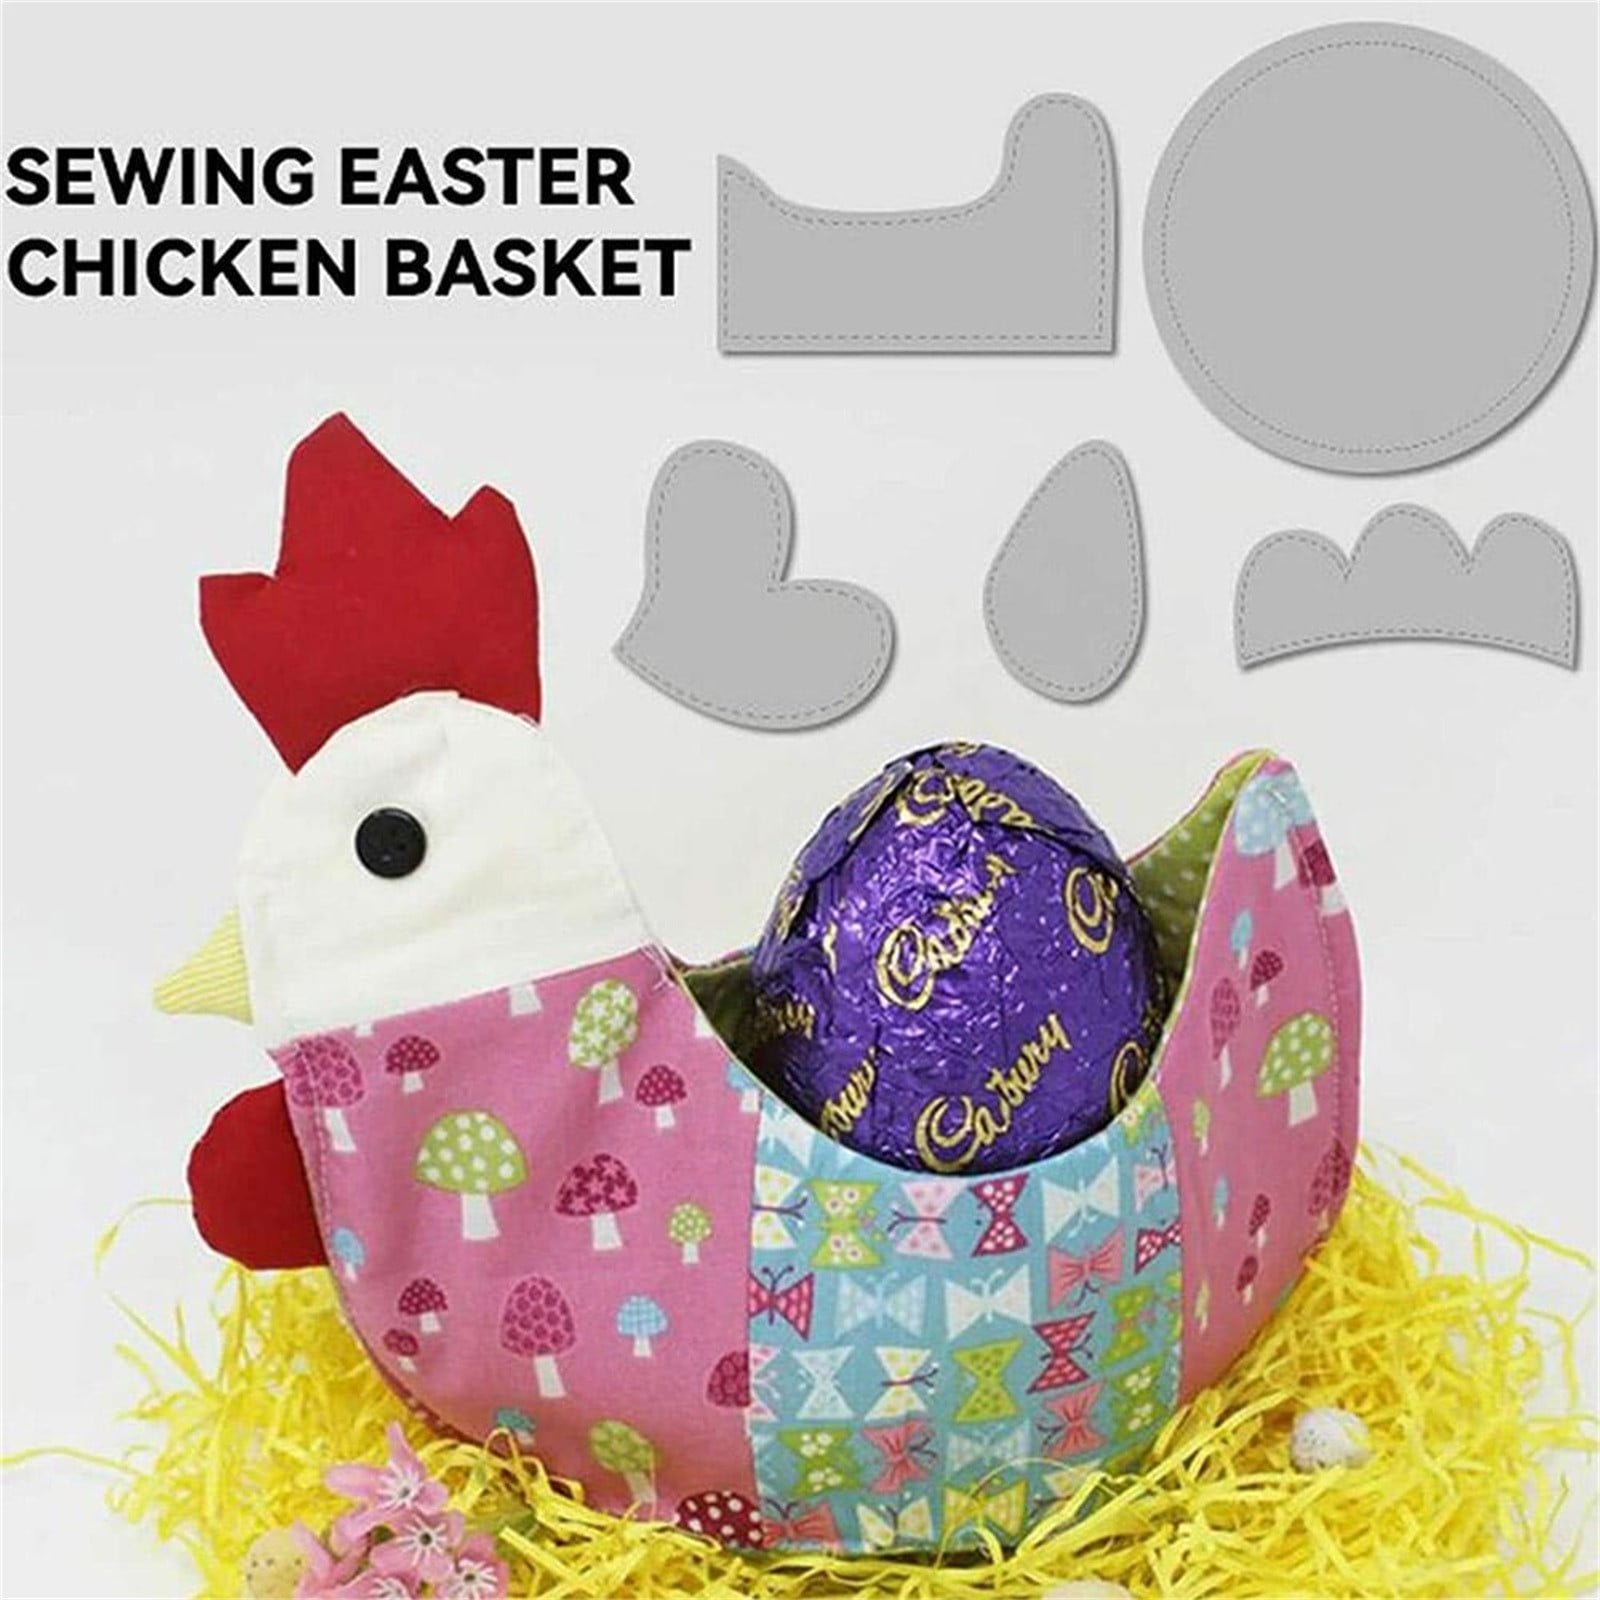 DIY Easter Chicken Egg Holder/Basket Free Sewing Patterns